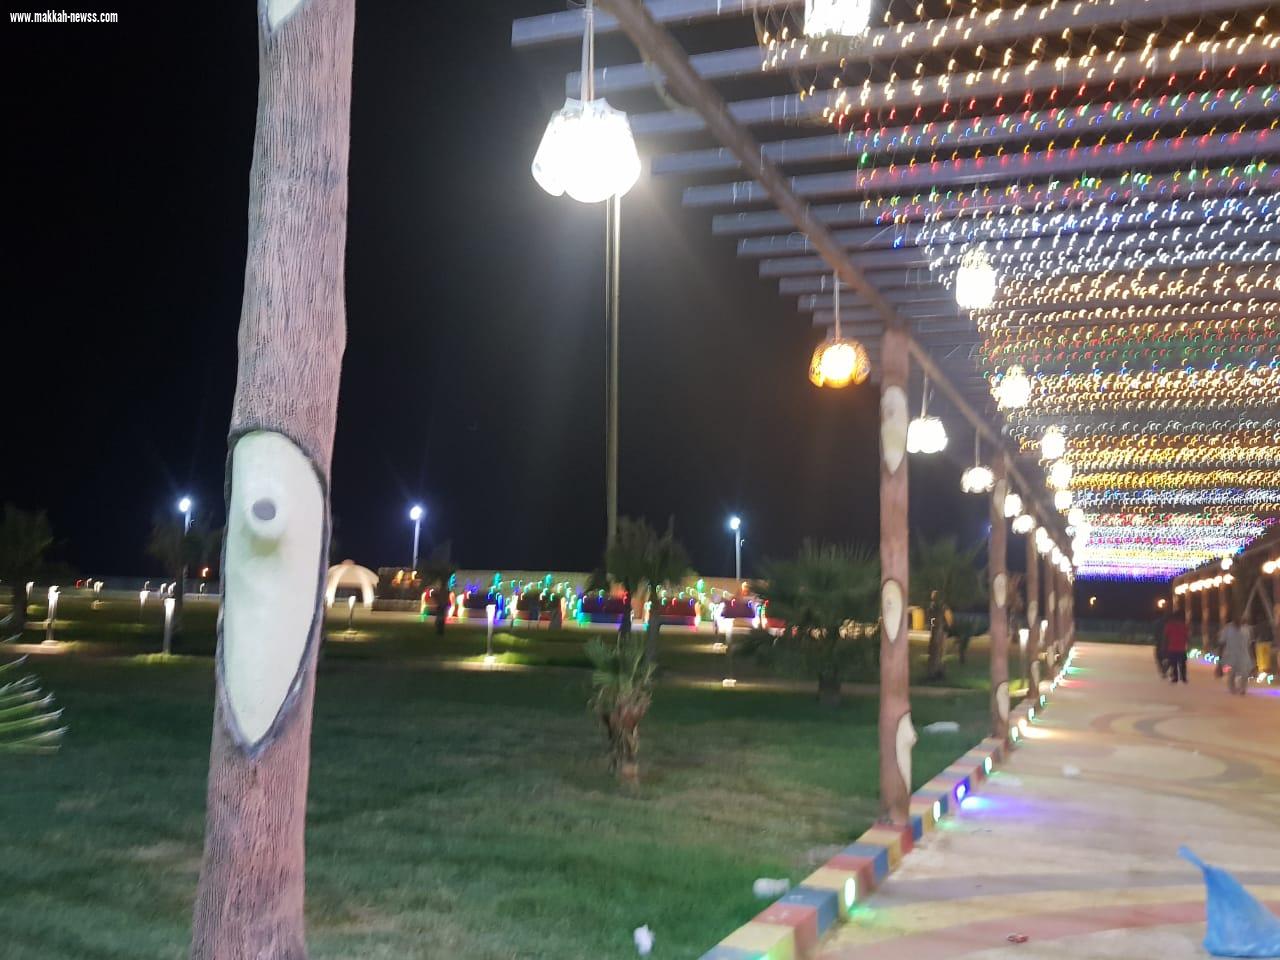 بلدية القفل تزين الحدائق والميادين استعداداً لعيد الفطر المبارك